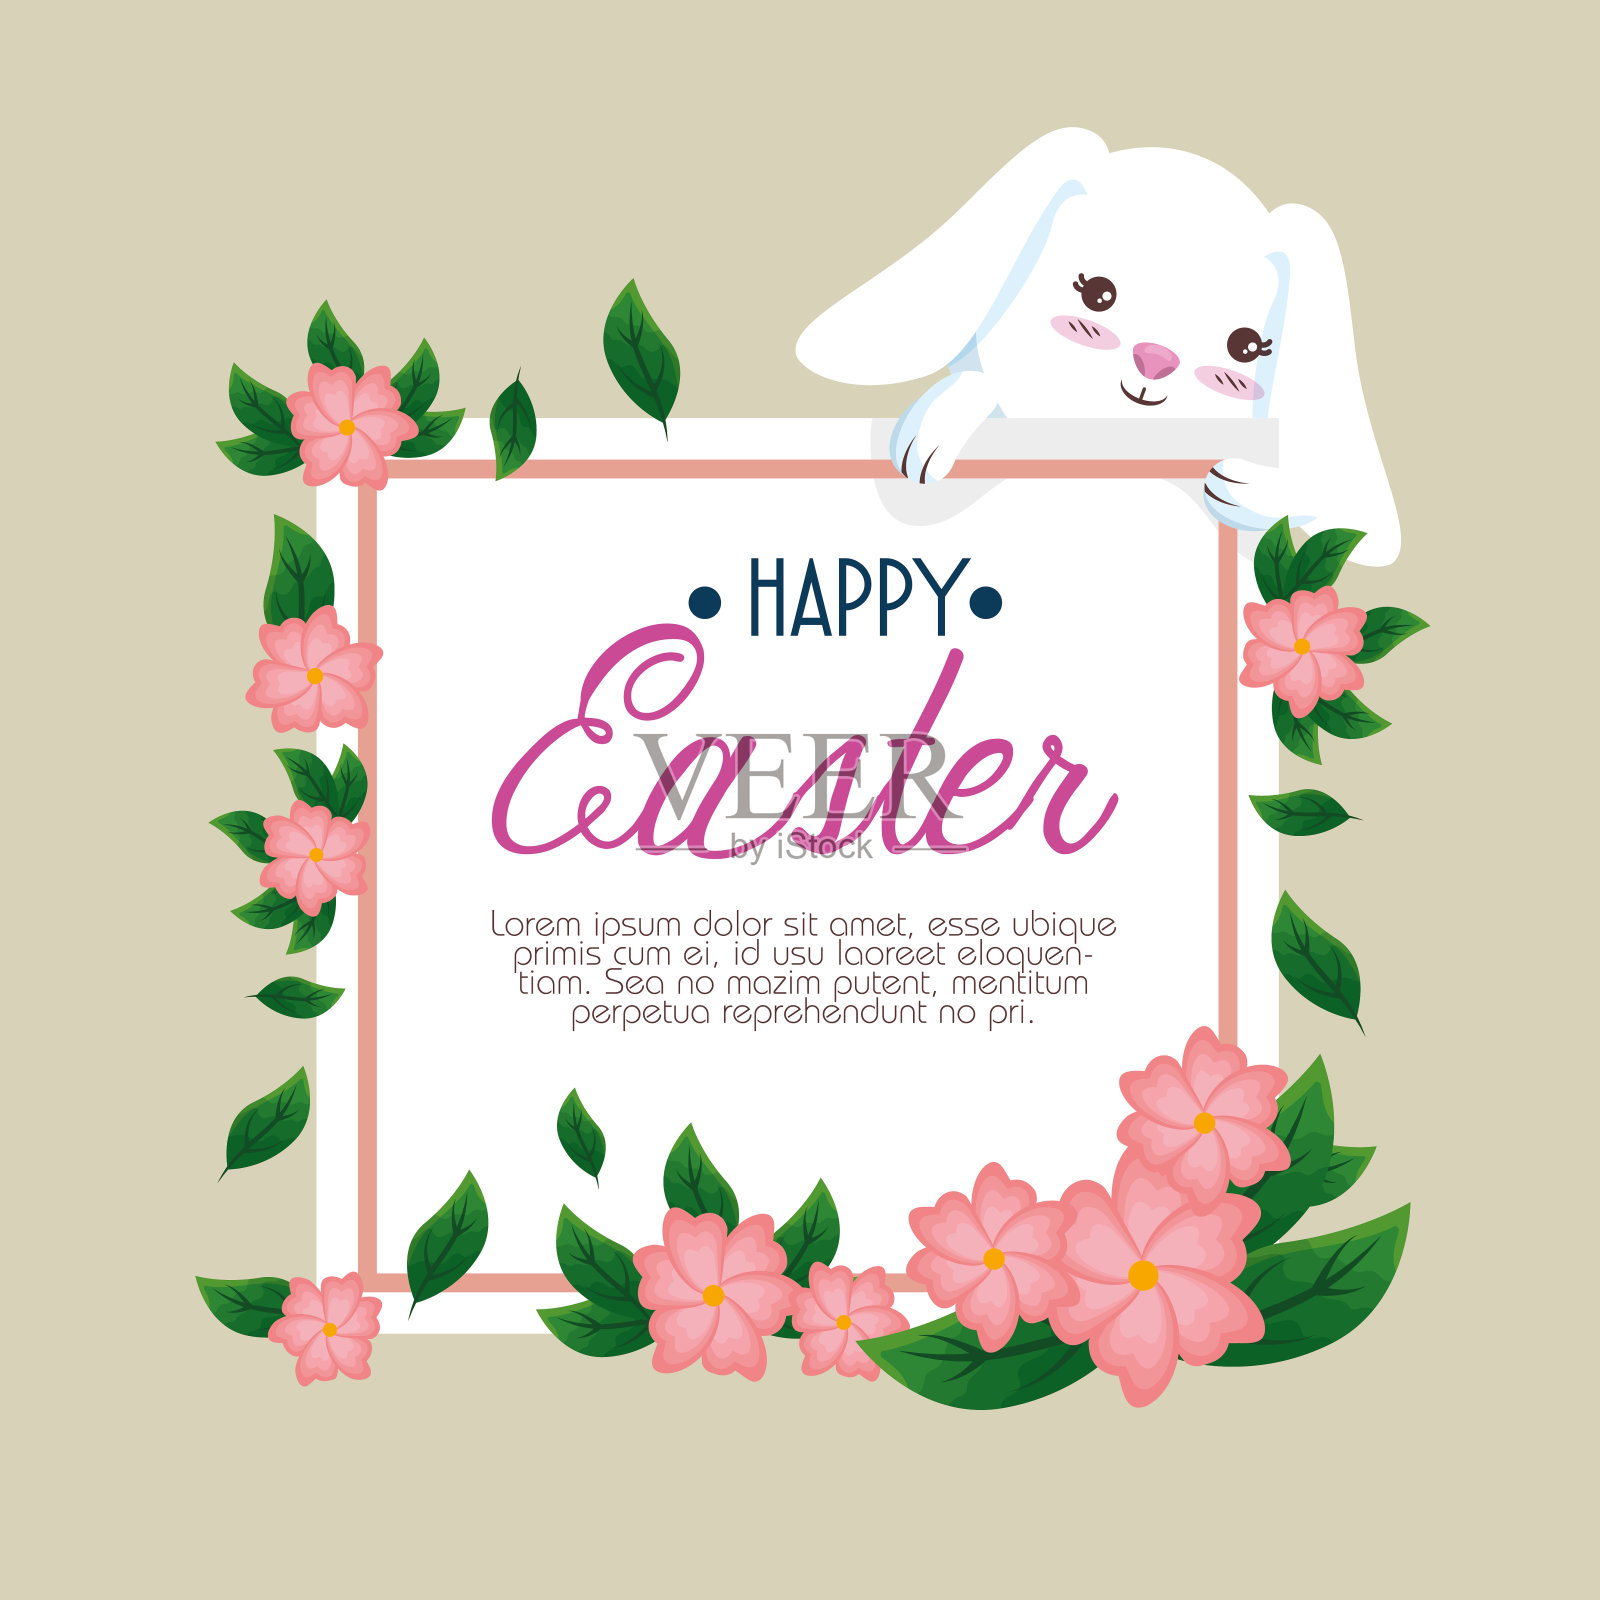 兔子带着快乐的复活节卡片和鲜花设计模板素材